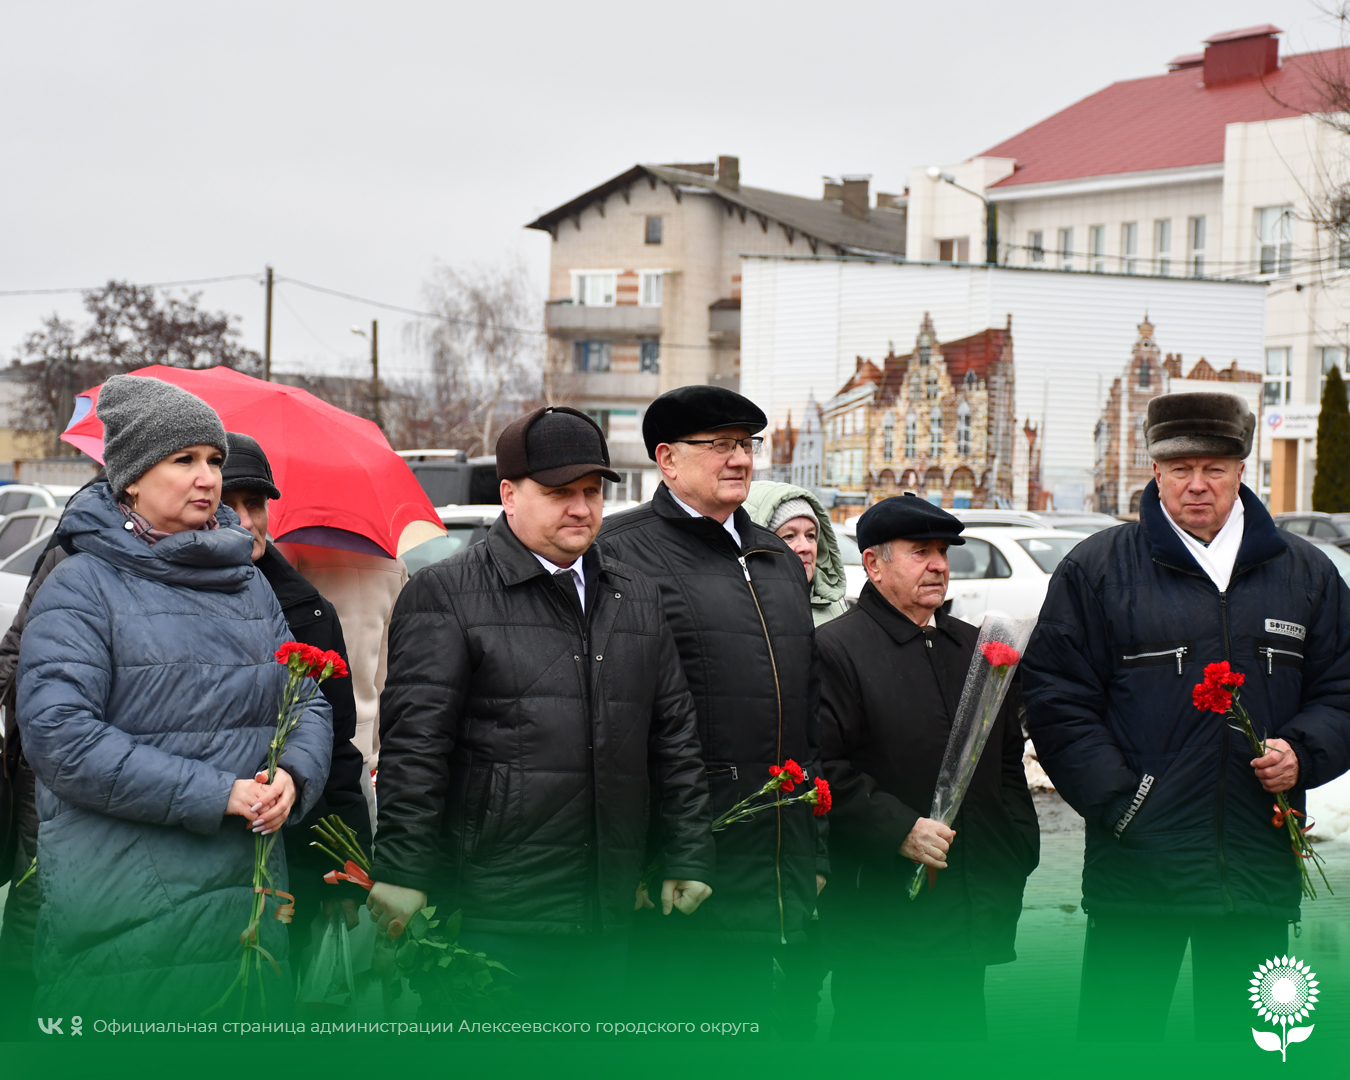 Сегодня отмечается памятная дата – 81-я годовщина освобождения Алексеевской земли от немецко-фашистских захватчиков.